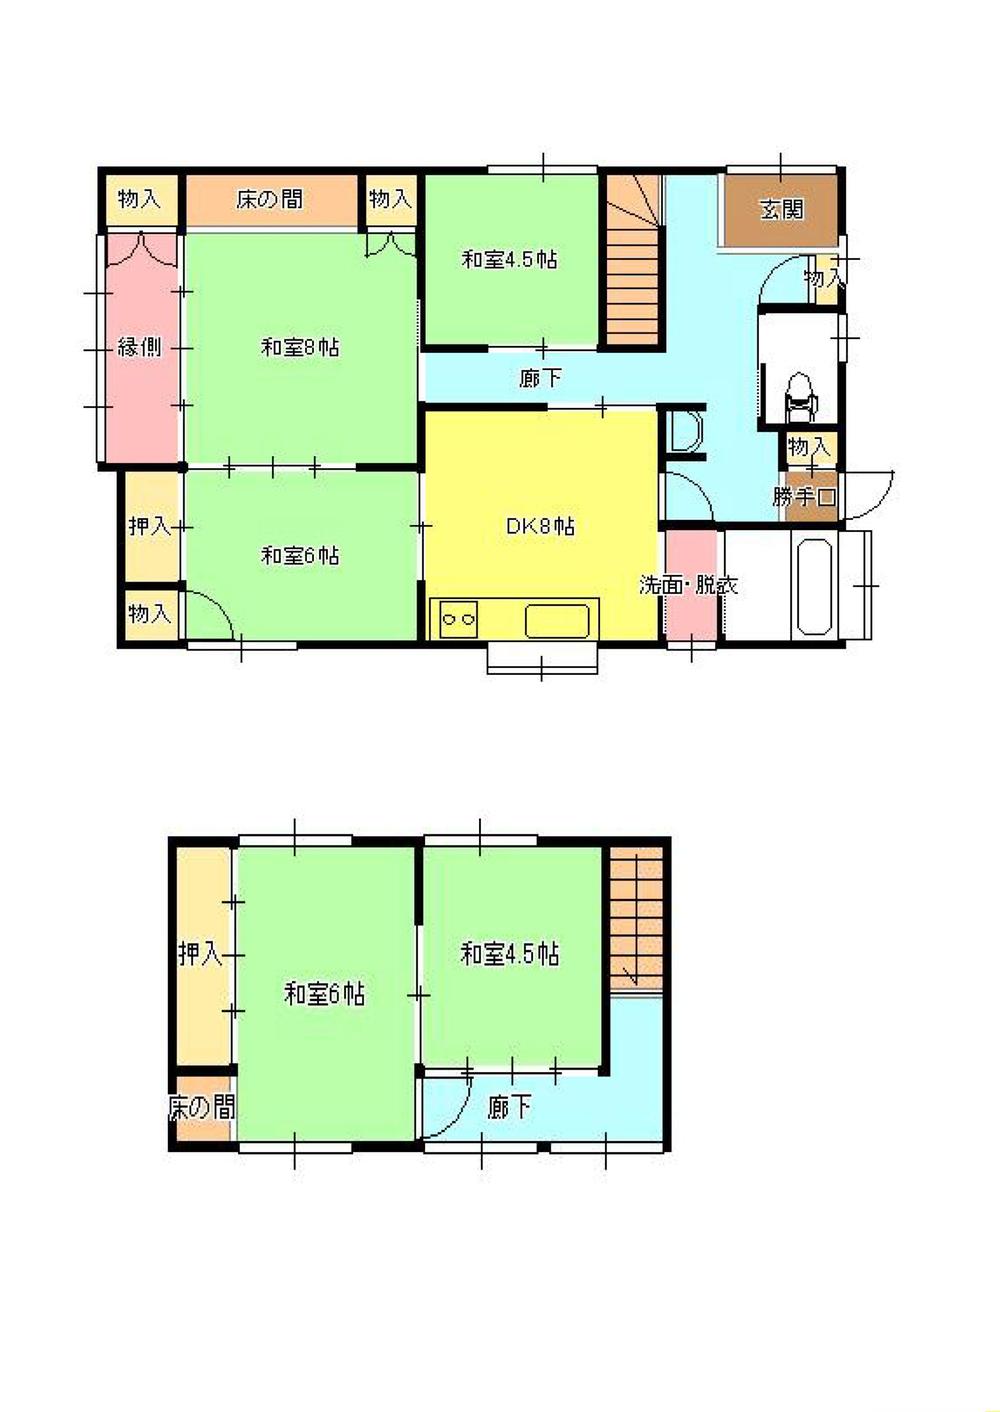 Floor plan. 9.6 million yen, 5DK, Land area 144.69 sq m , Building area 112.27 sq m